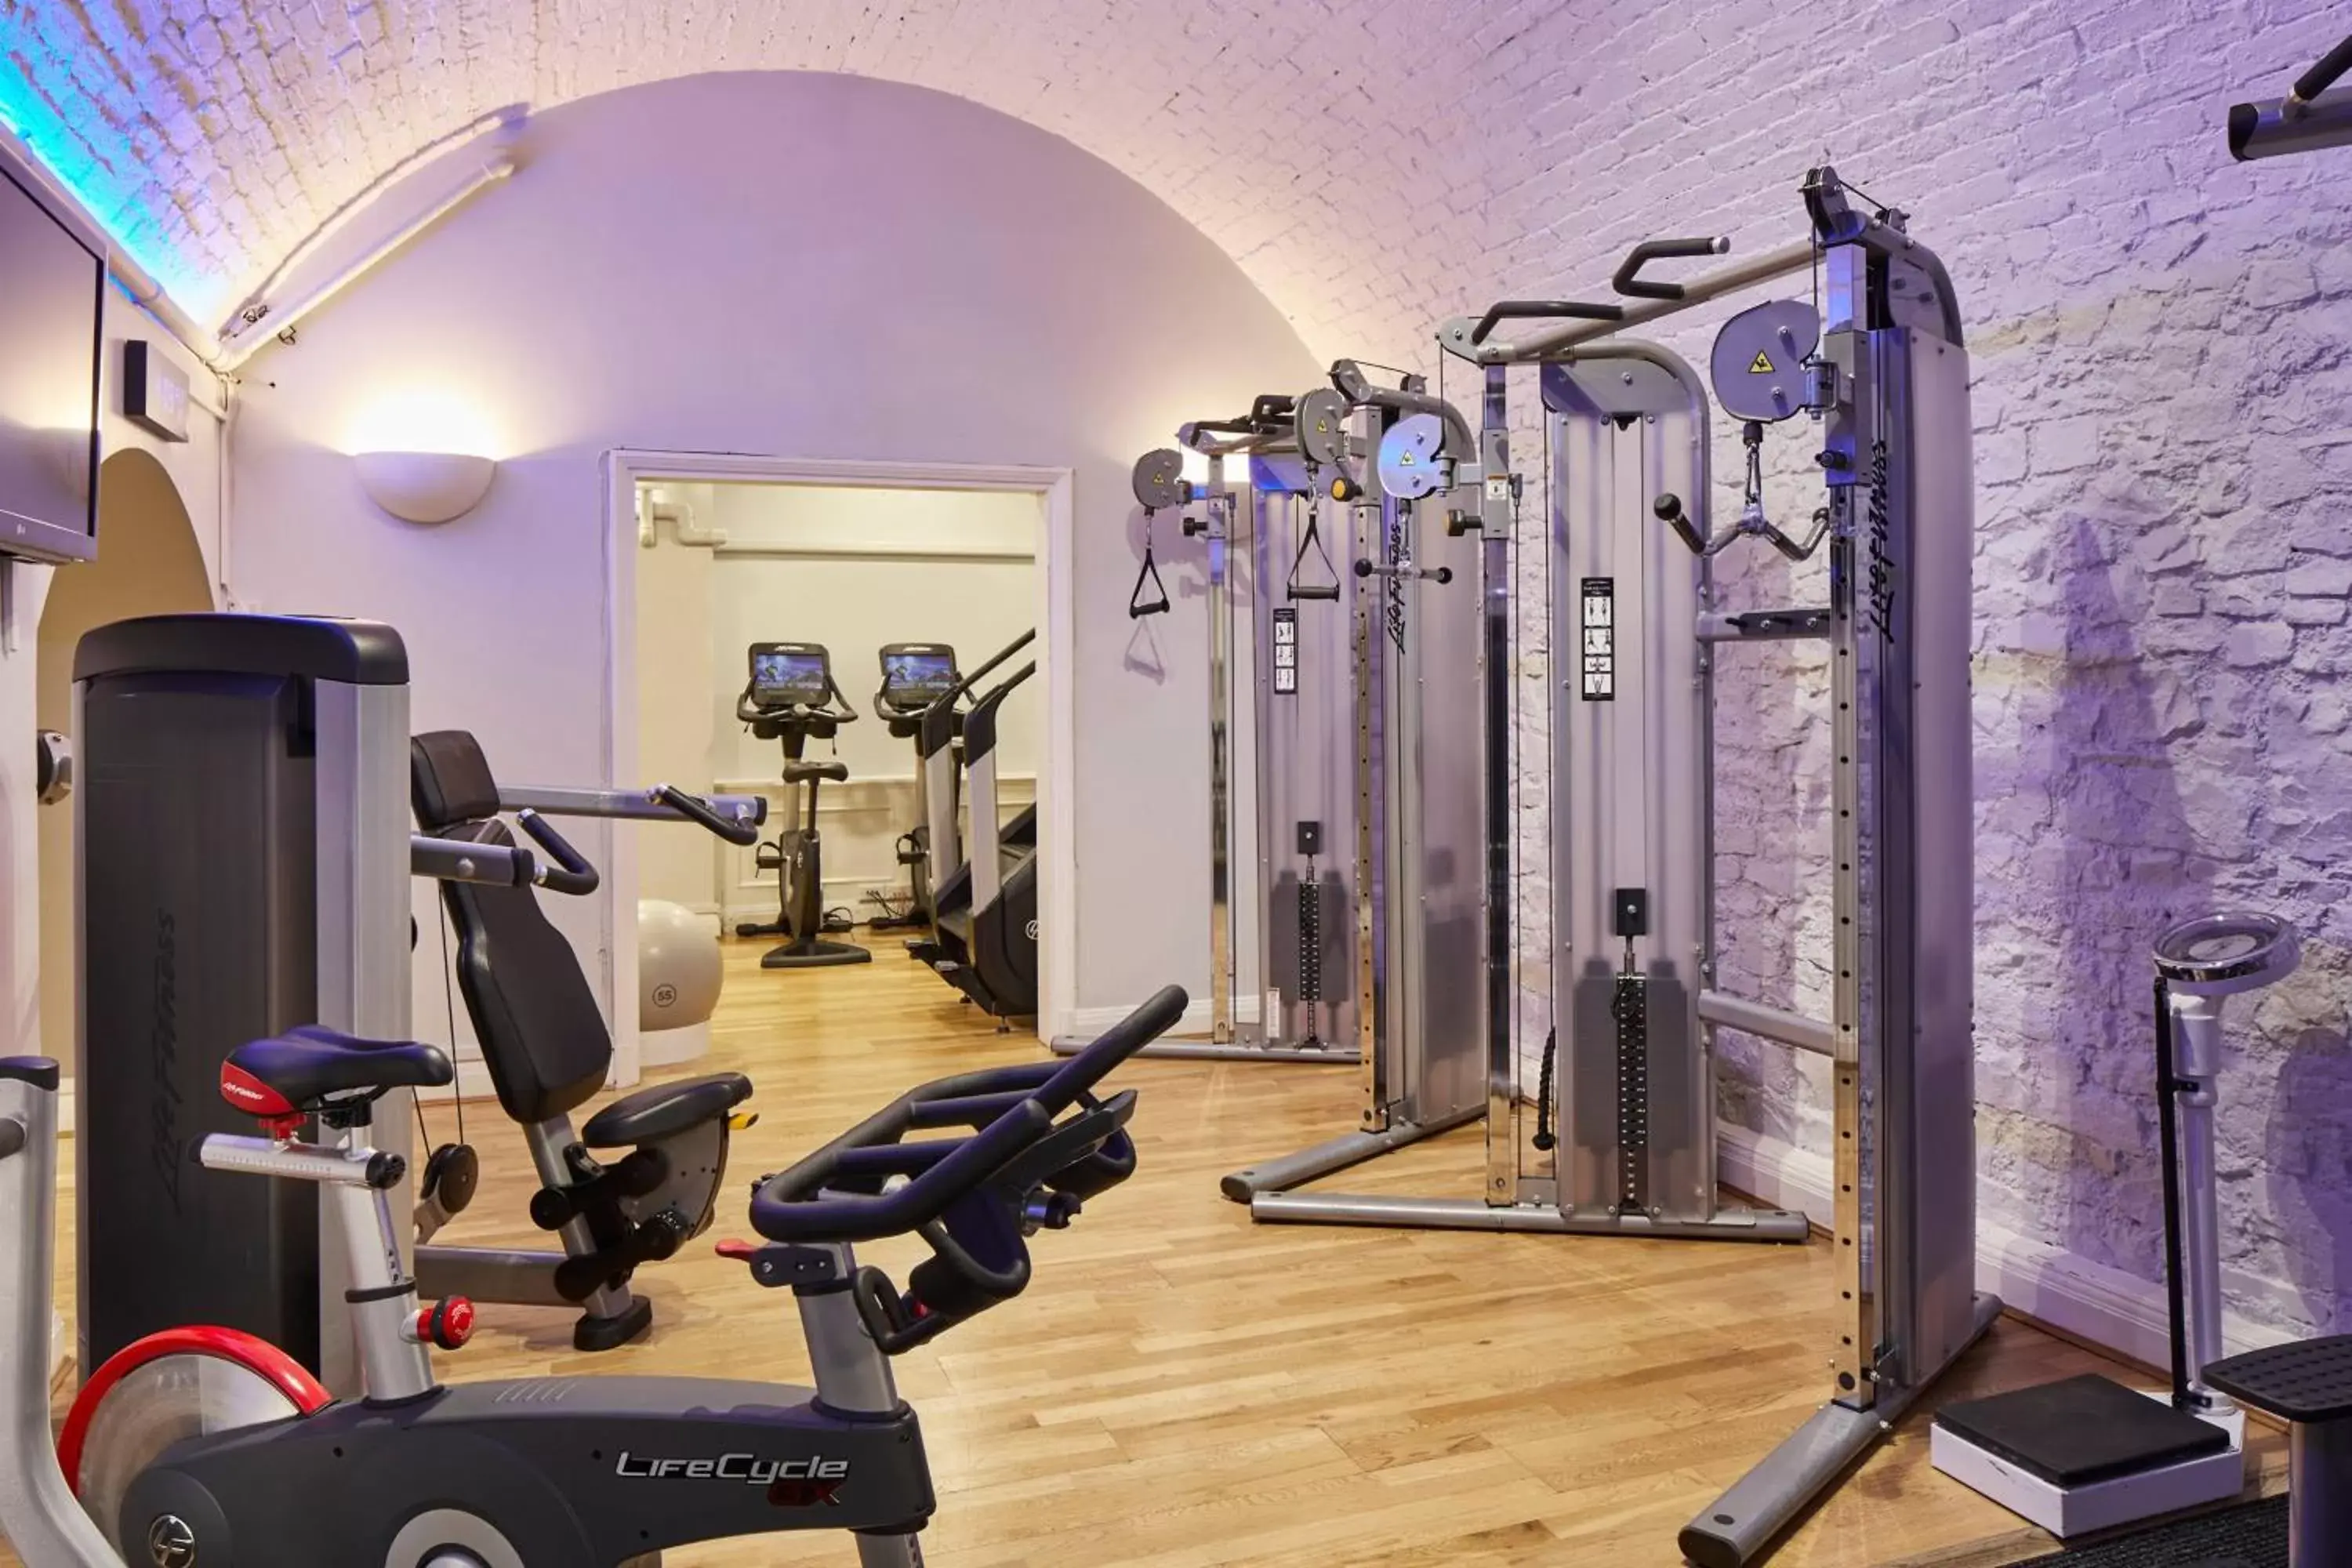 Fitness centre/facilities, Fitness Center/Facilities in Bristol Marriott Royal Hotel